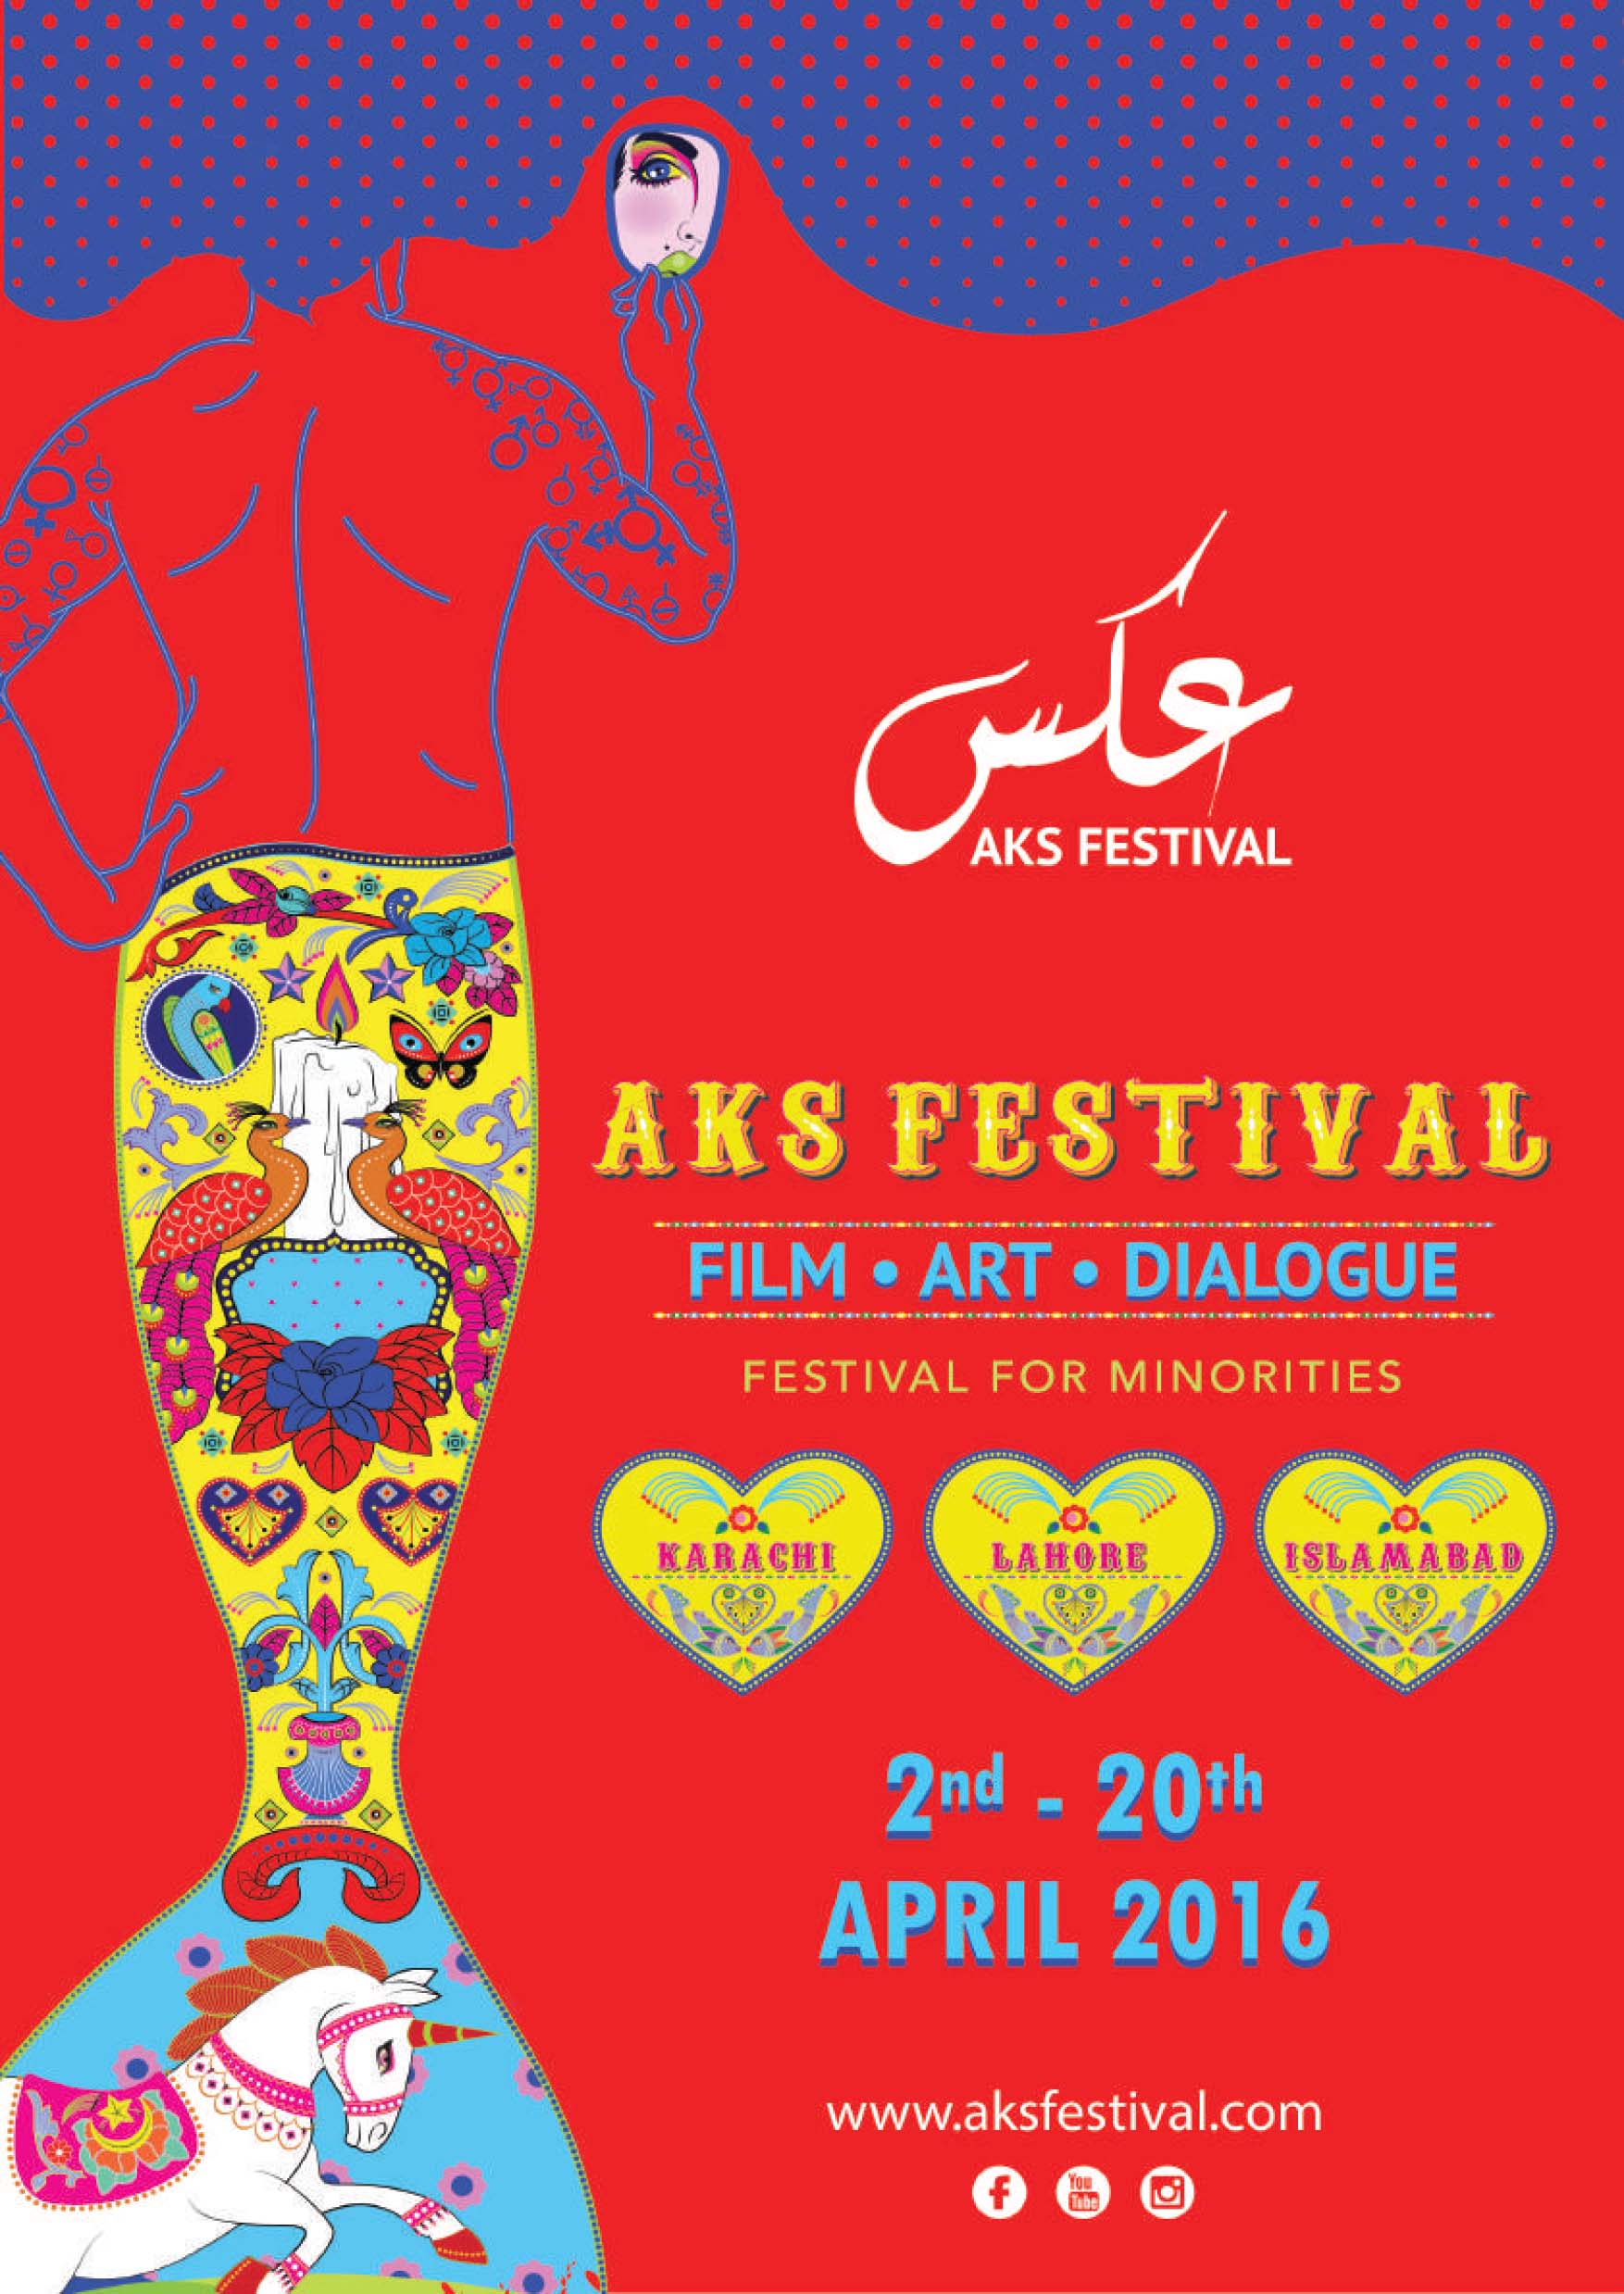 AKS Festival 2016 poster (source: aksfestival.com)